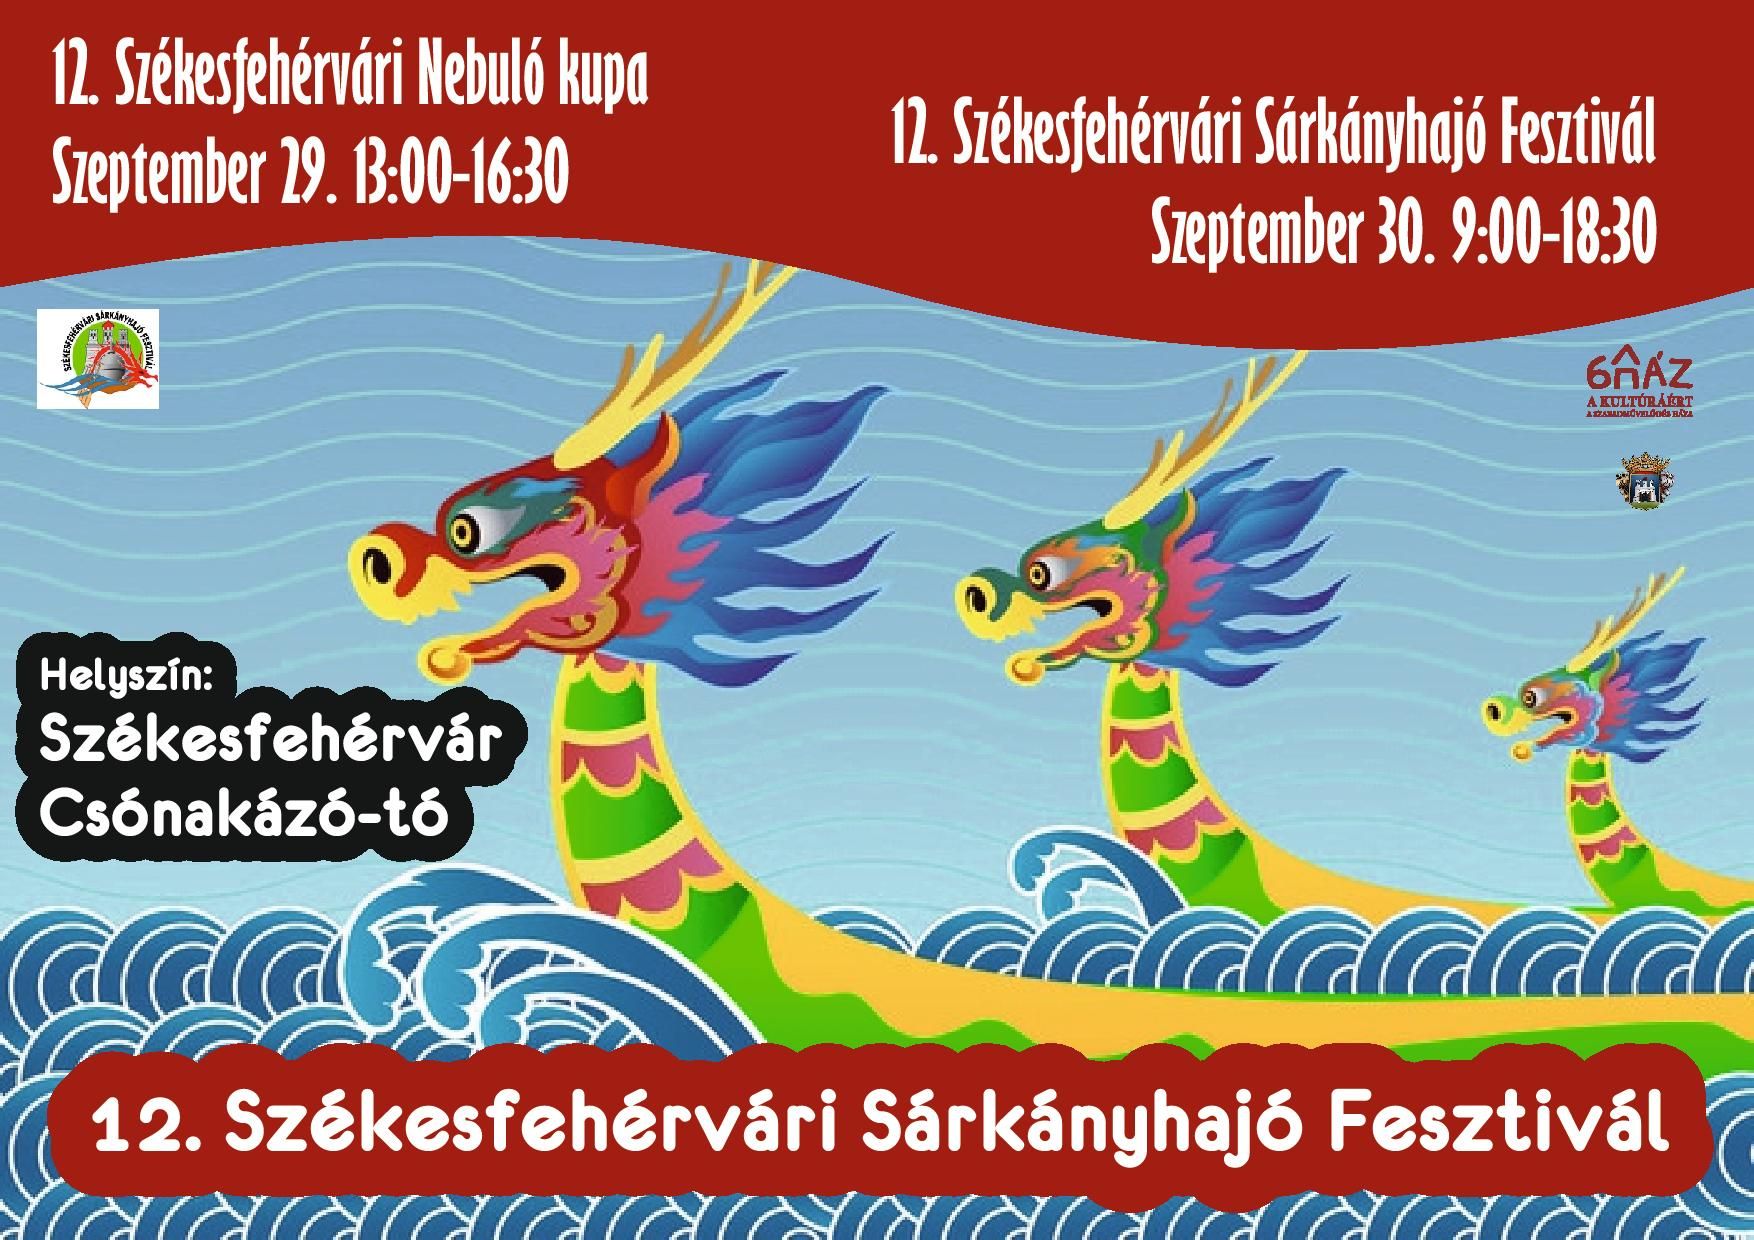 Szeptember 22-ig várják a nevezéseket az idei Sárkányhajó Fesztiválra